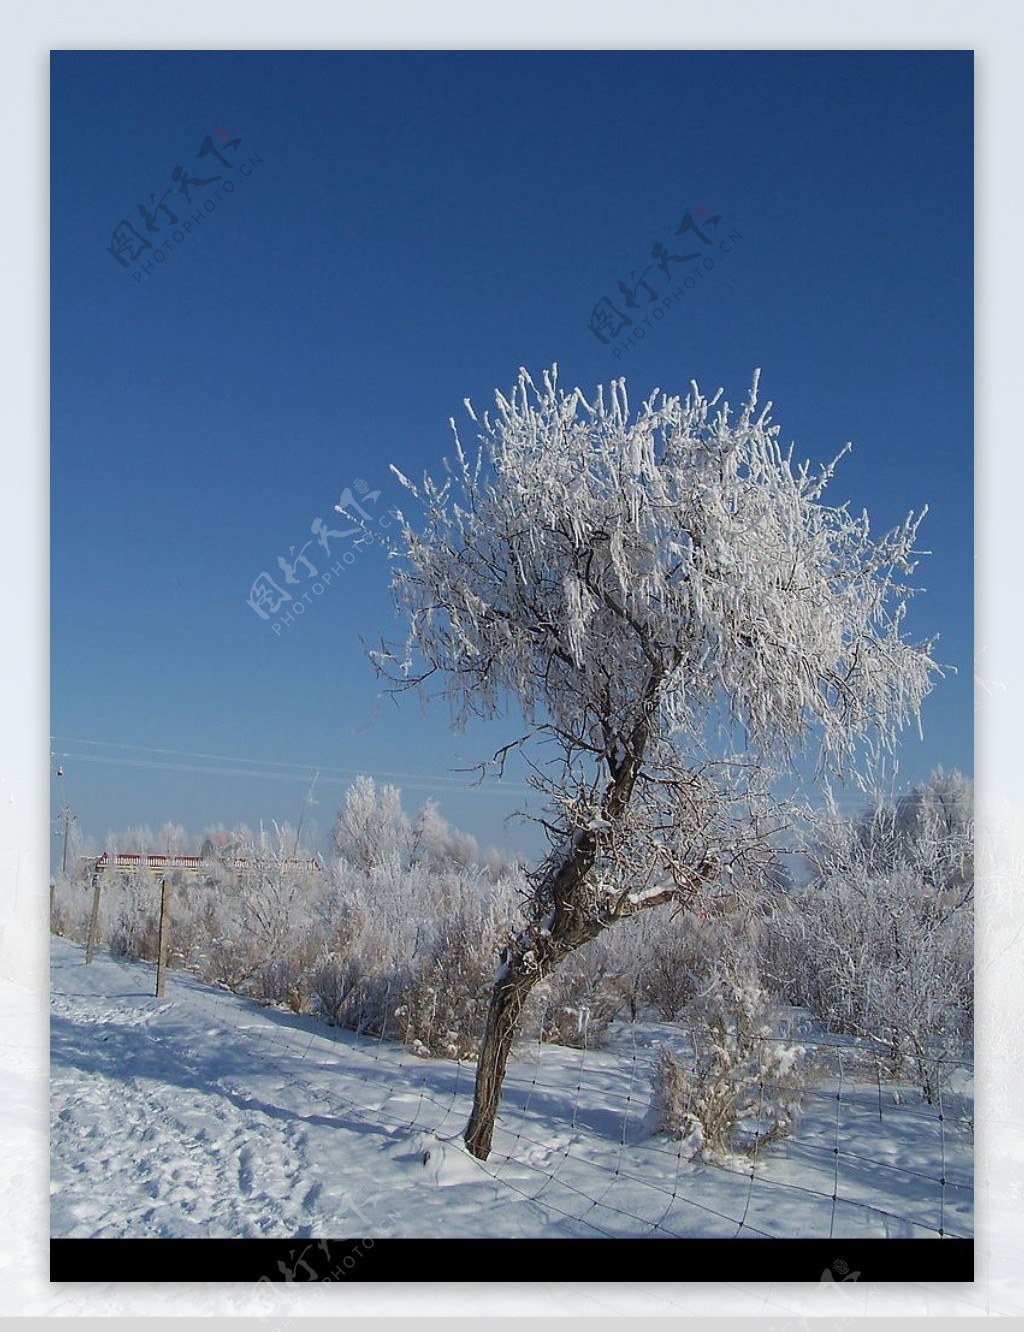 新疆奇台雪景图片